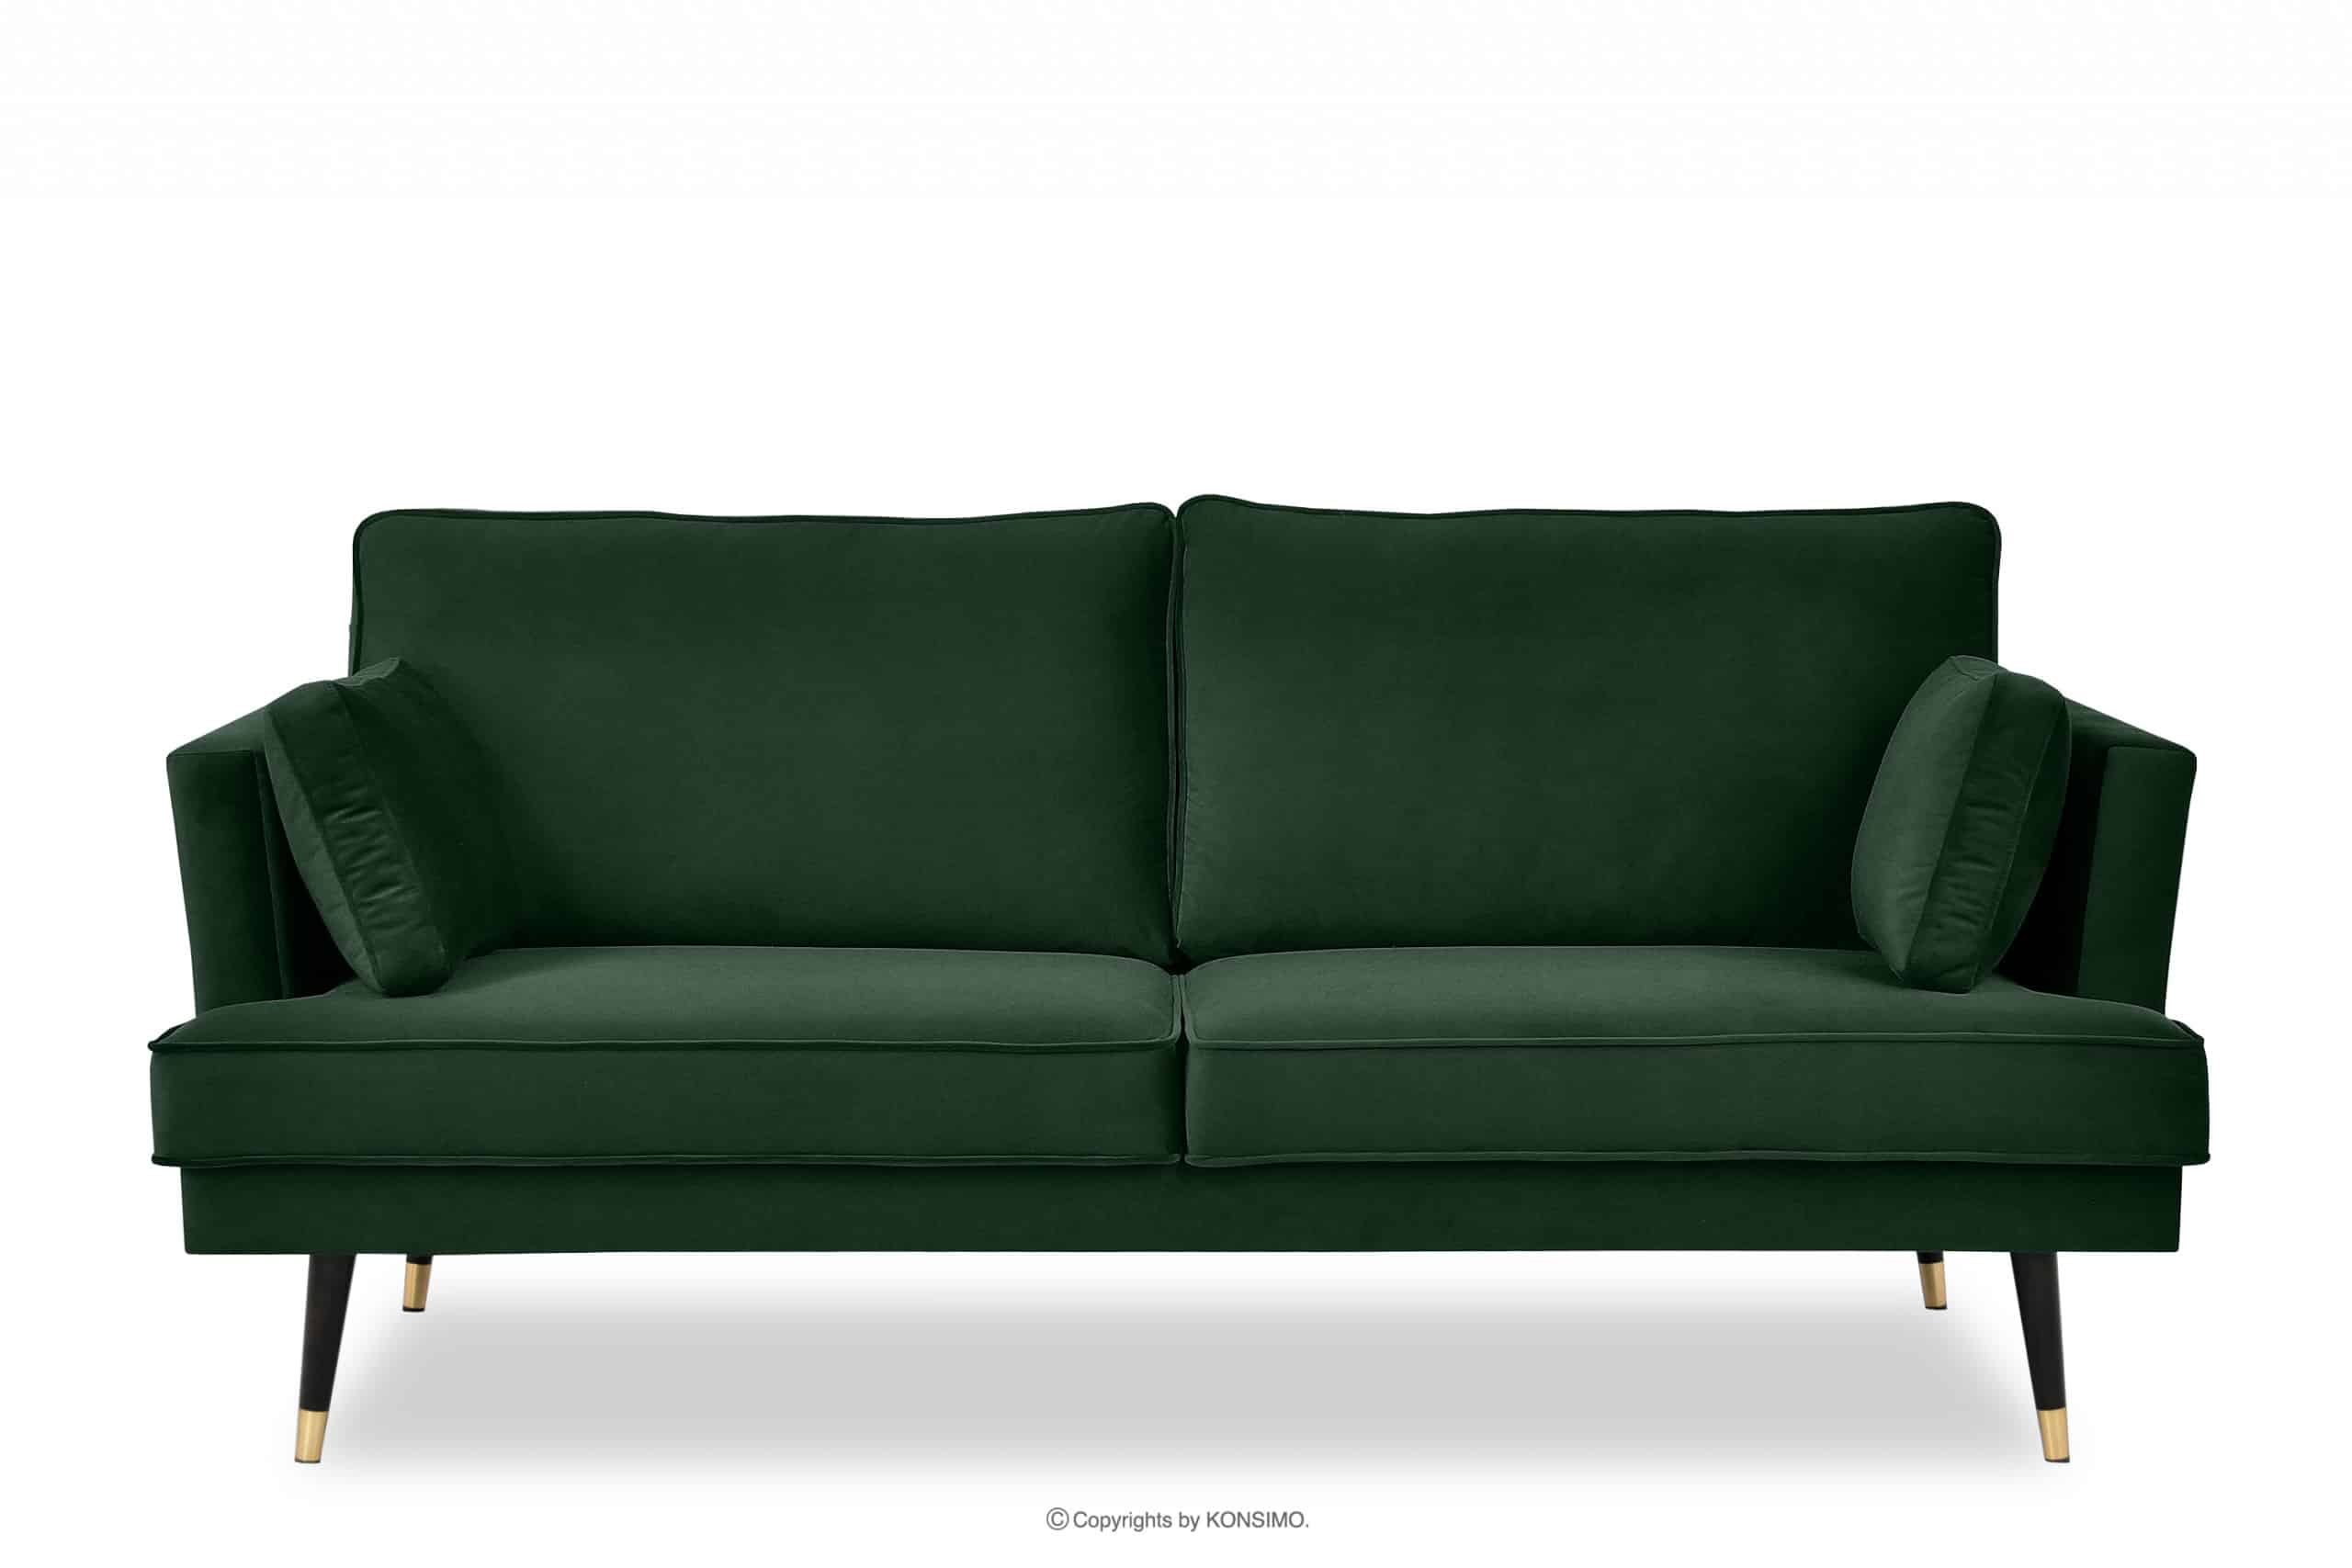 Sofa trzyosobowa welurowa glamour butelkowa zieleń